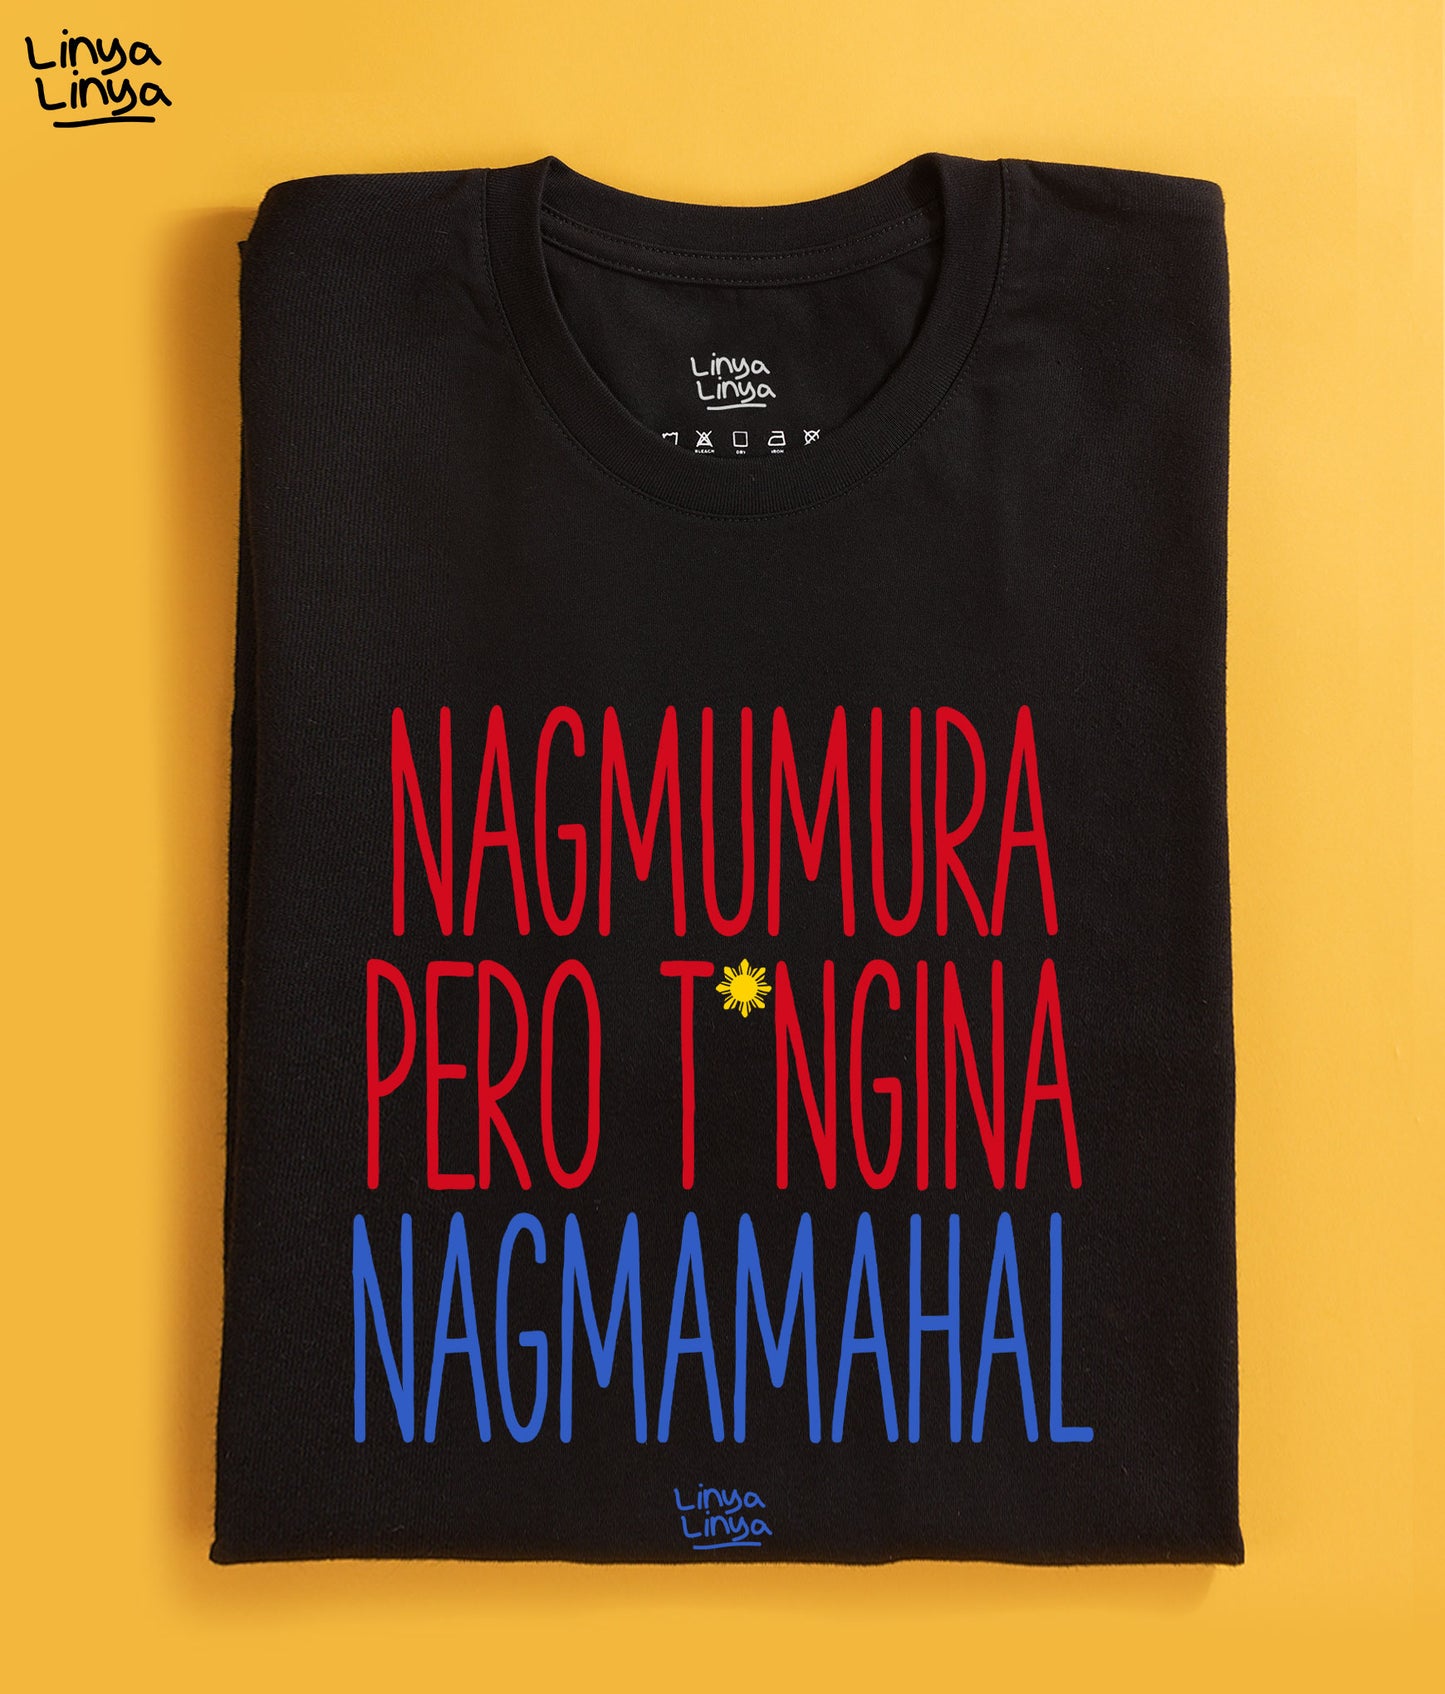 Nagmumura Pero T*ngina Nagmamahal (Black)